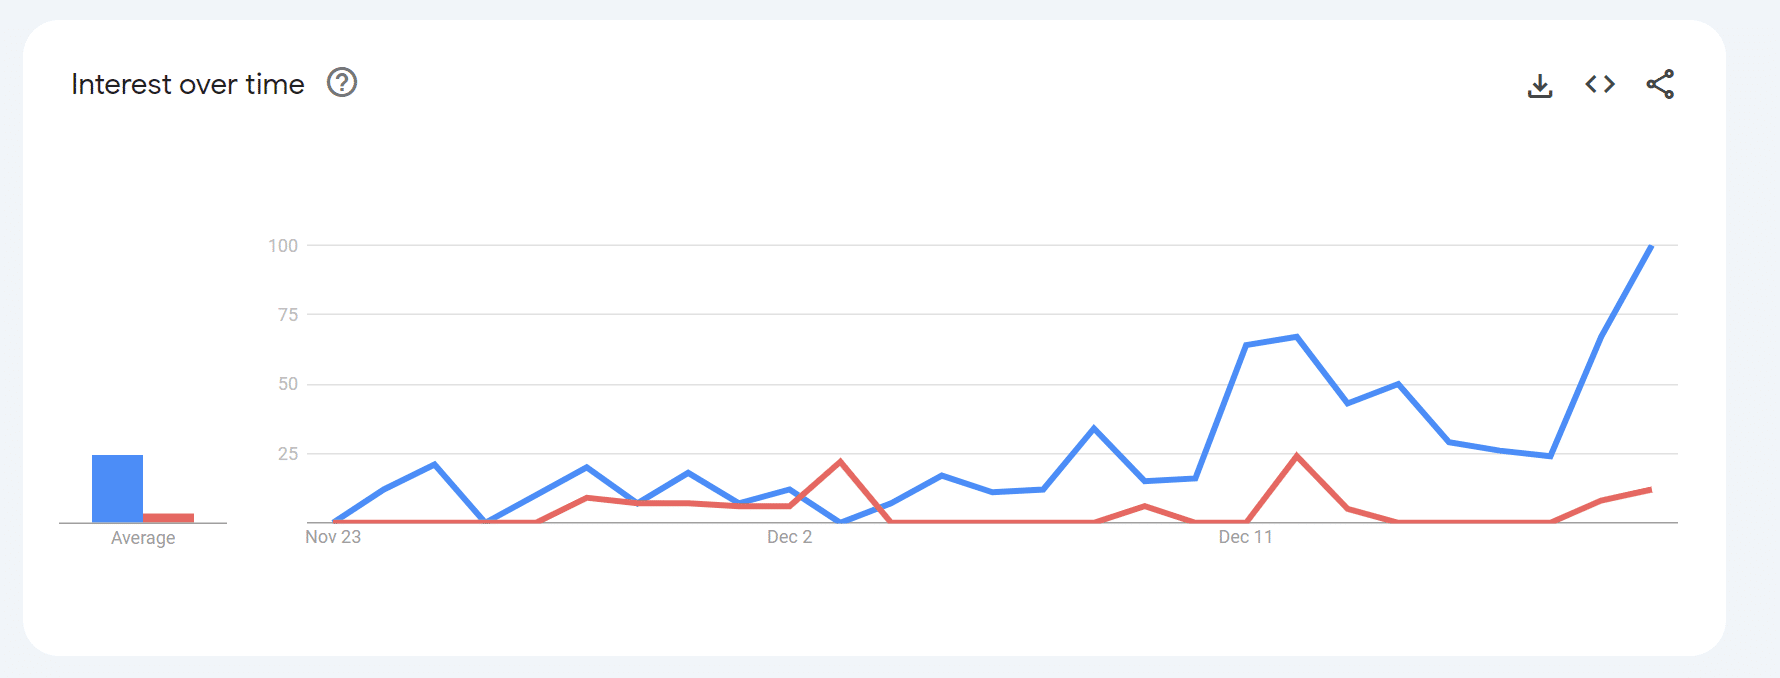 การฉีดกับกอริลลา: Google Trends